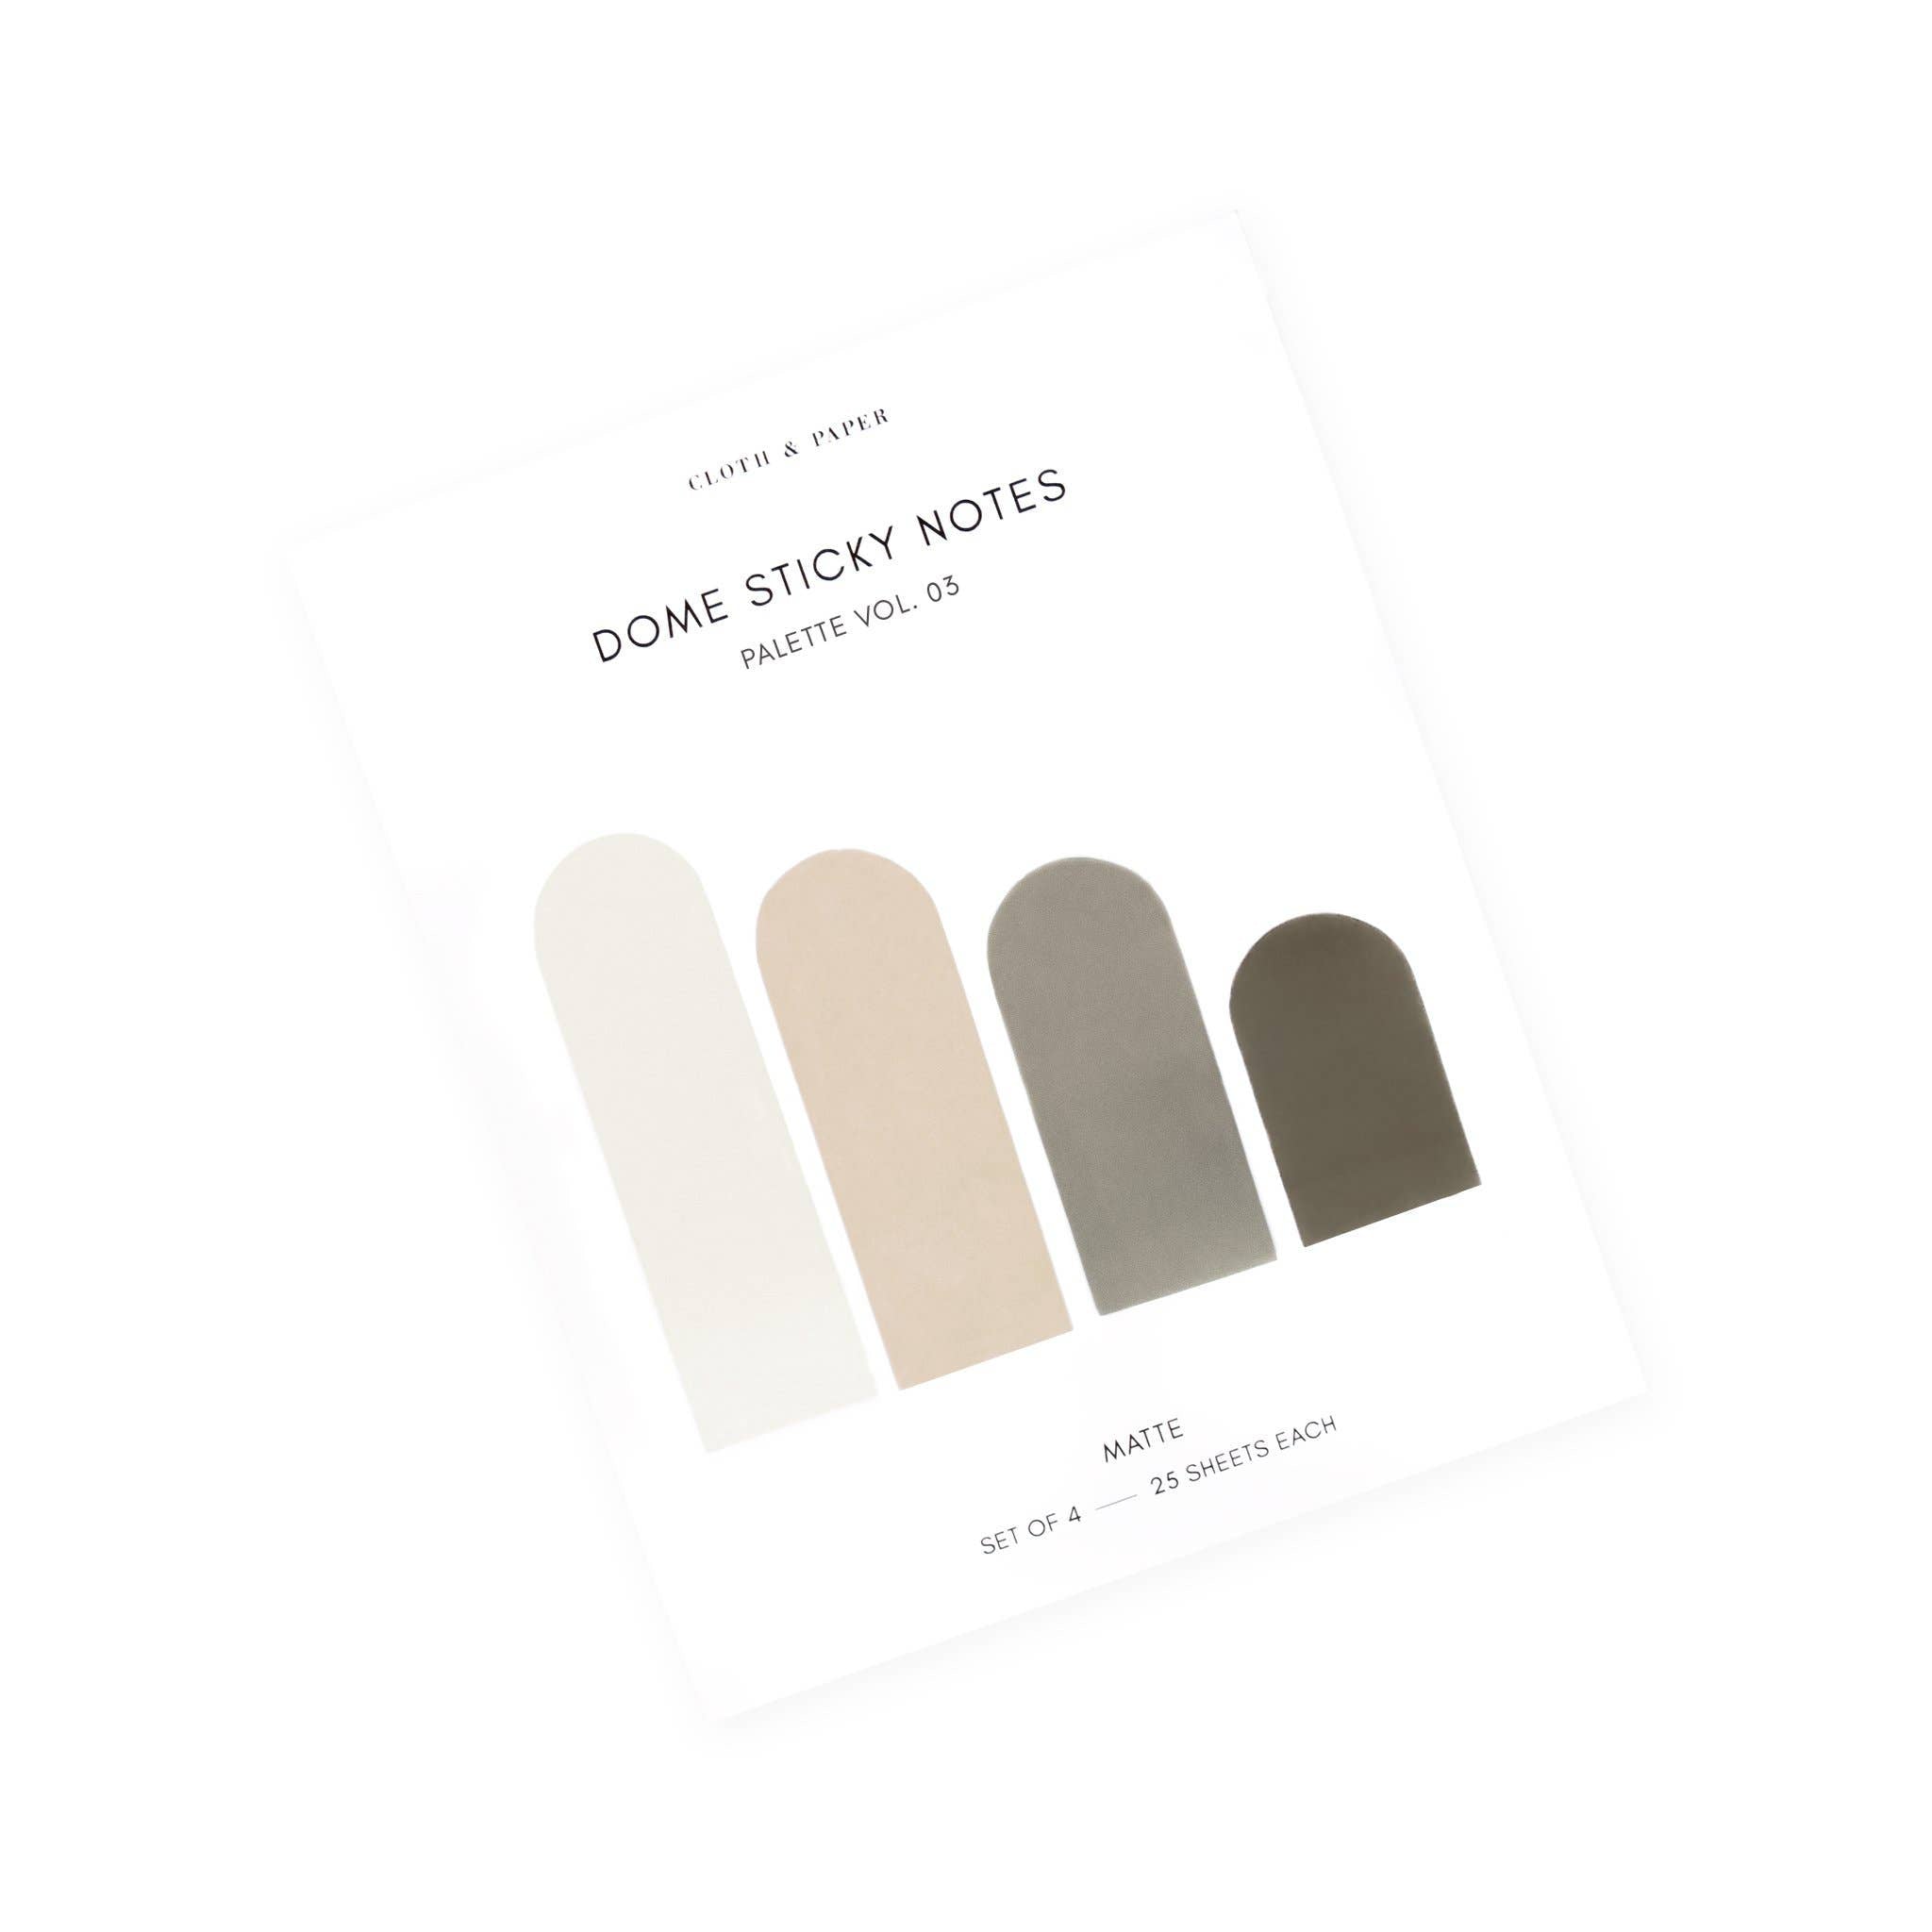 Dome Sticky Notes - Palette Vol. 03